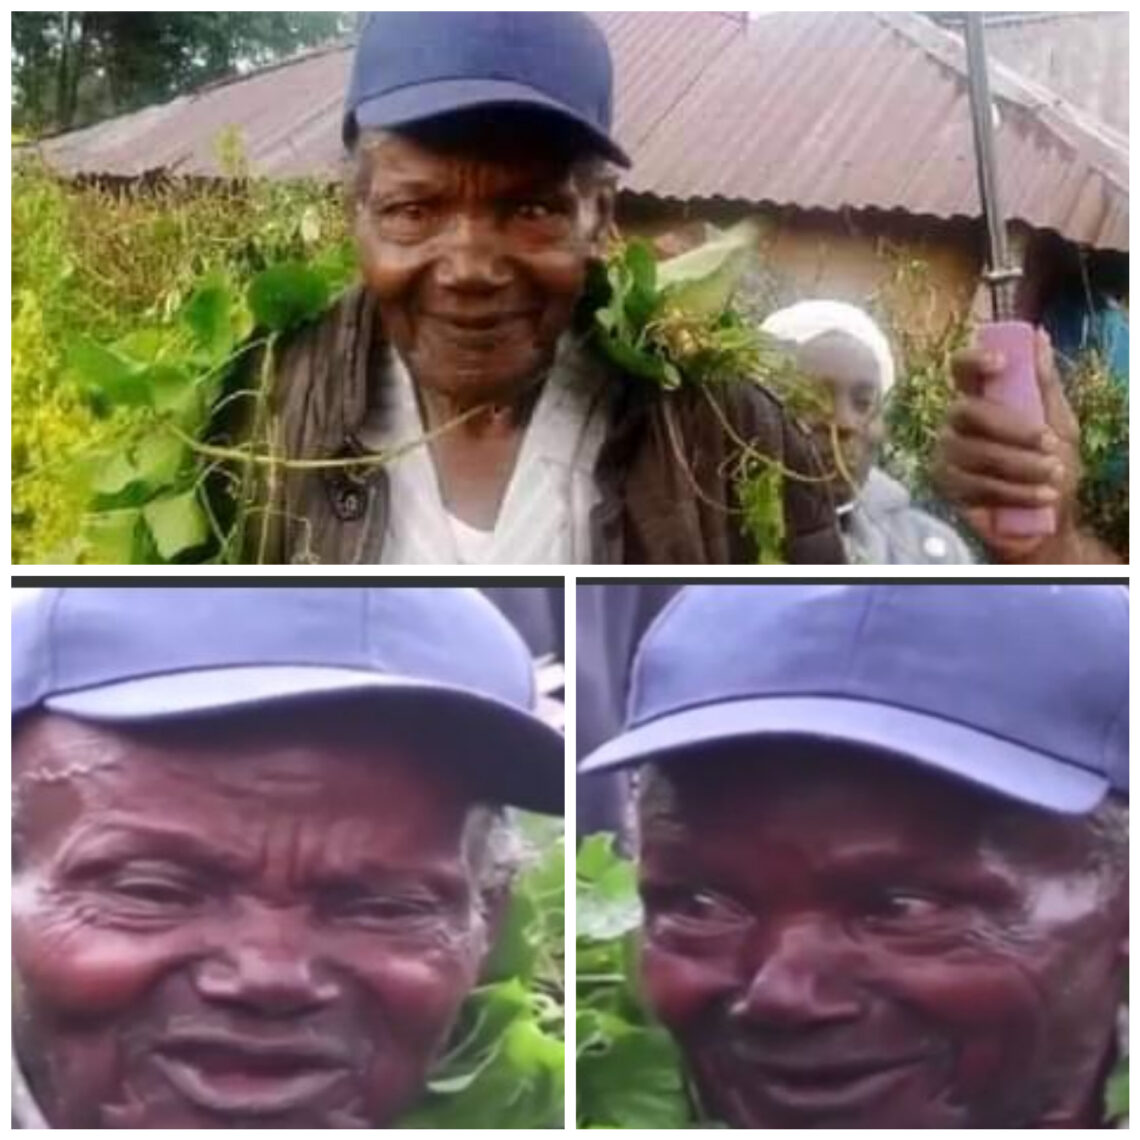 Machuka un vieil homme kenyan de 91 ans revient après 50 ans d'absence avec une canne comme seul bien. Il avait disparu i il y a 50 ans...